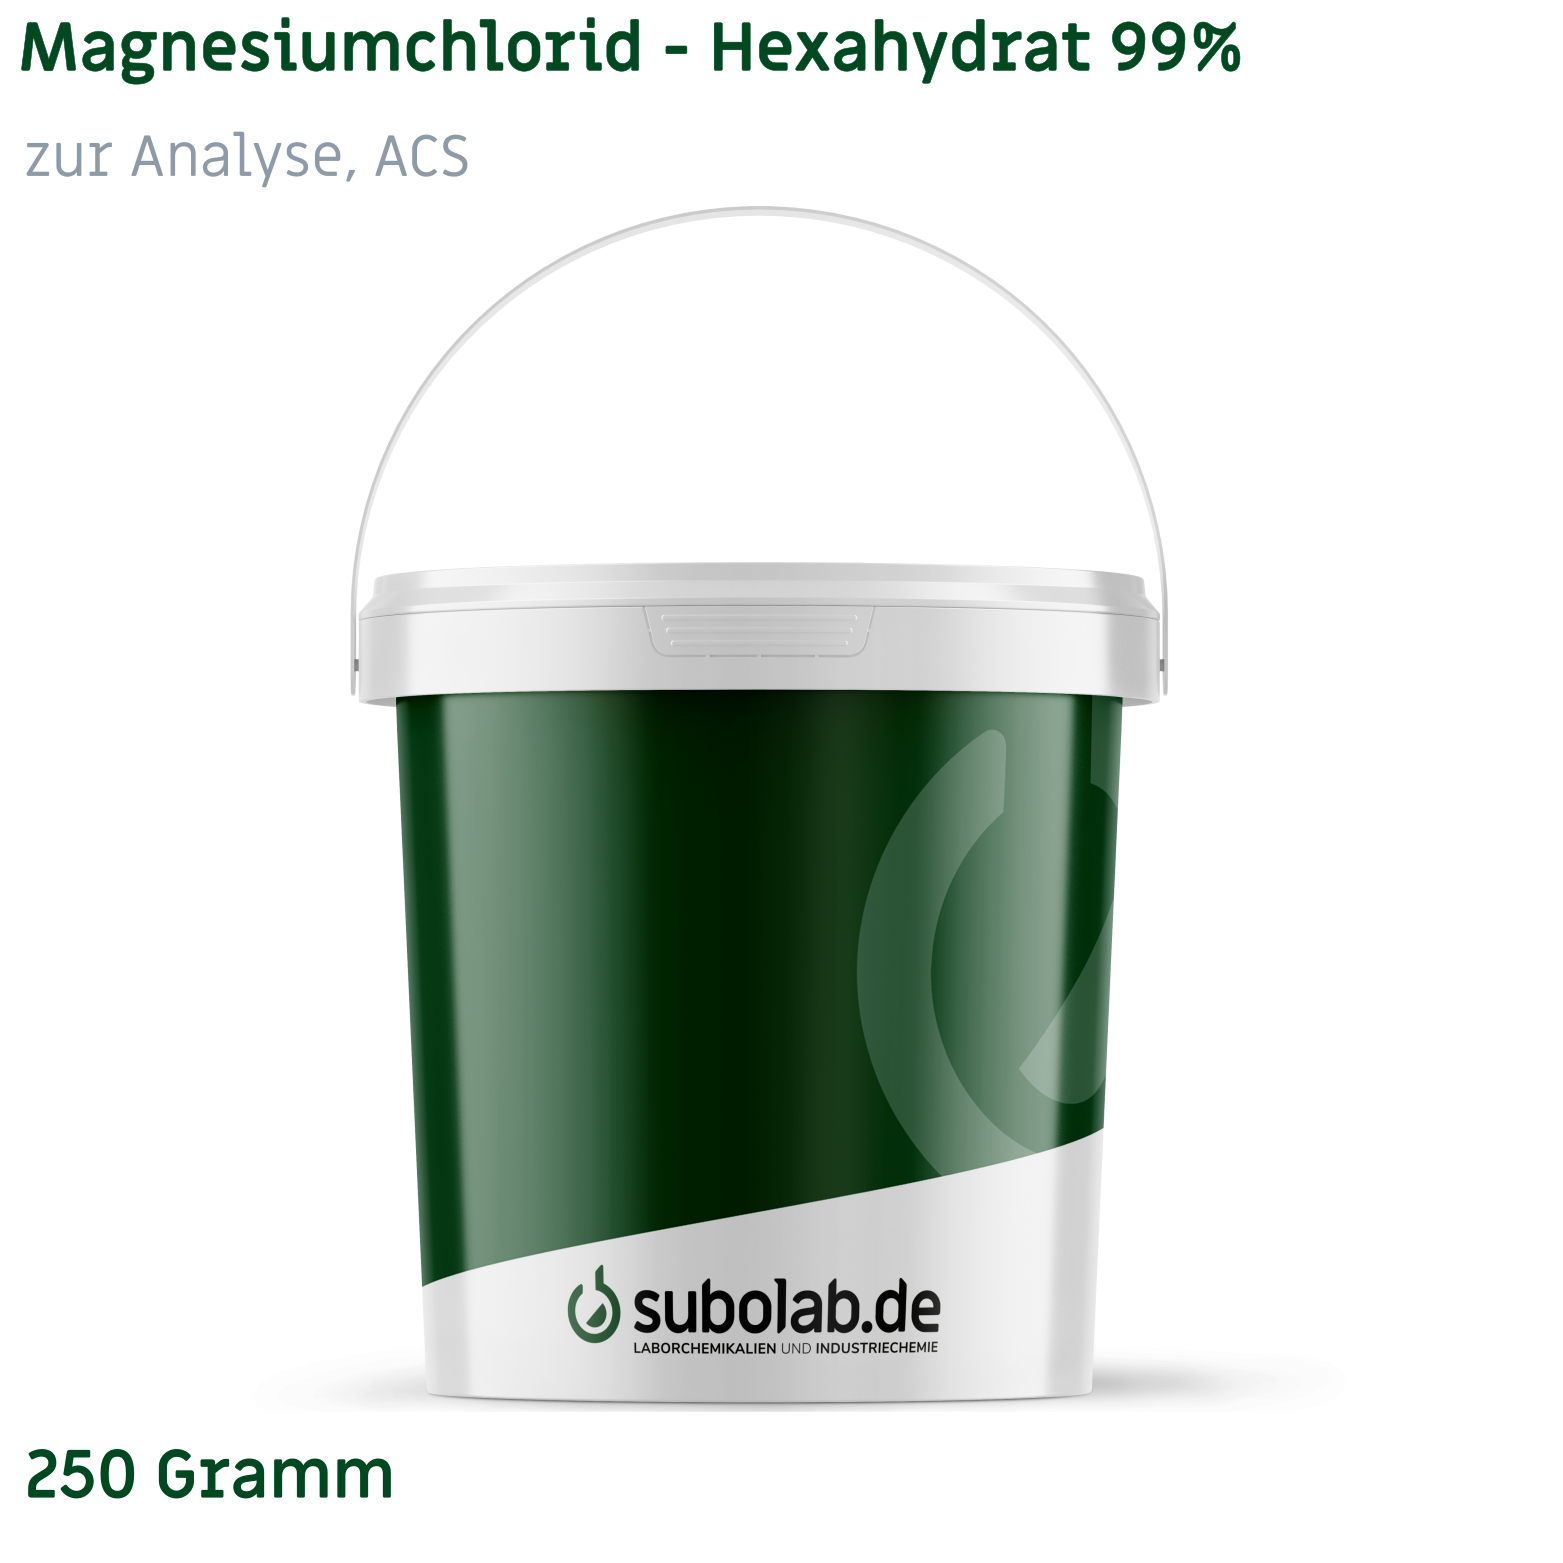 Bild von Magnesiumchlorid - Hexahydrat 99% zur Analyse, ACS (250 Gramm)